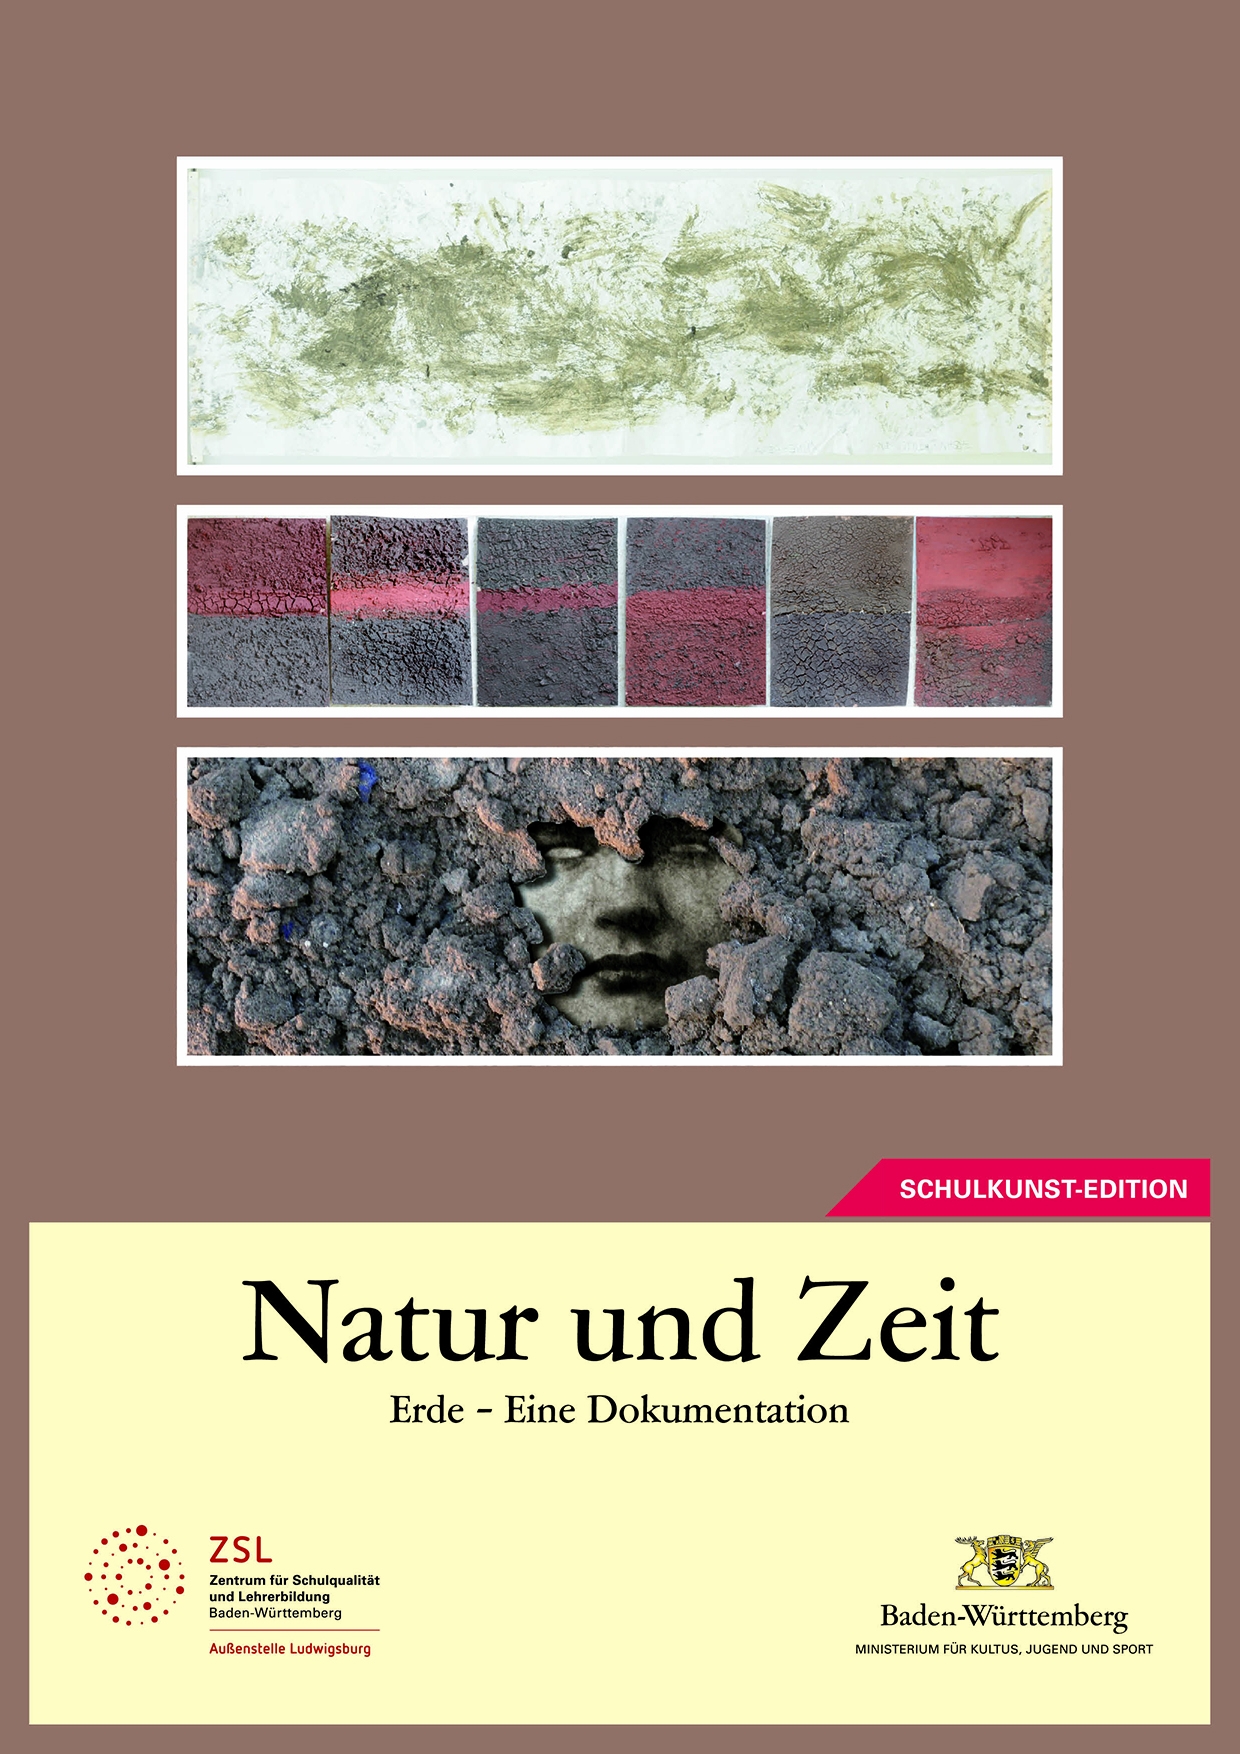 Edition "Natur und Zeit. Erde - Eine Dokumentation"